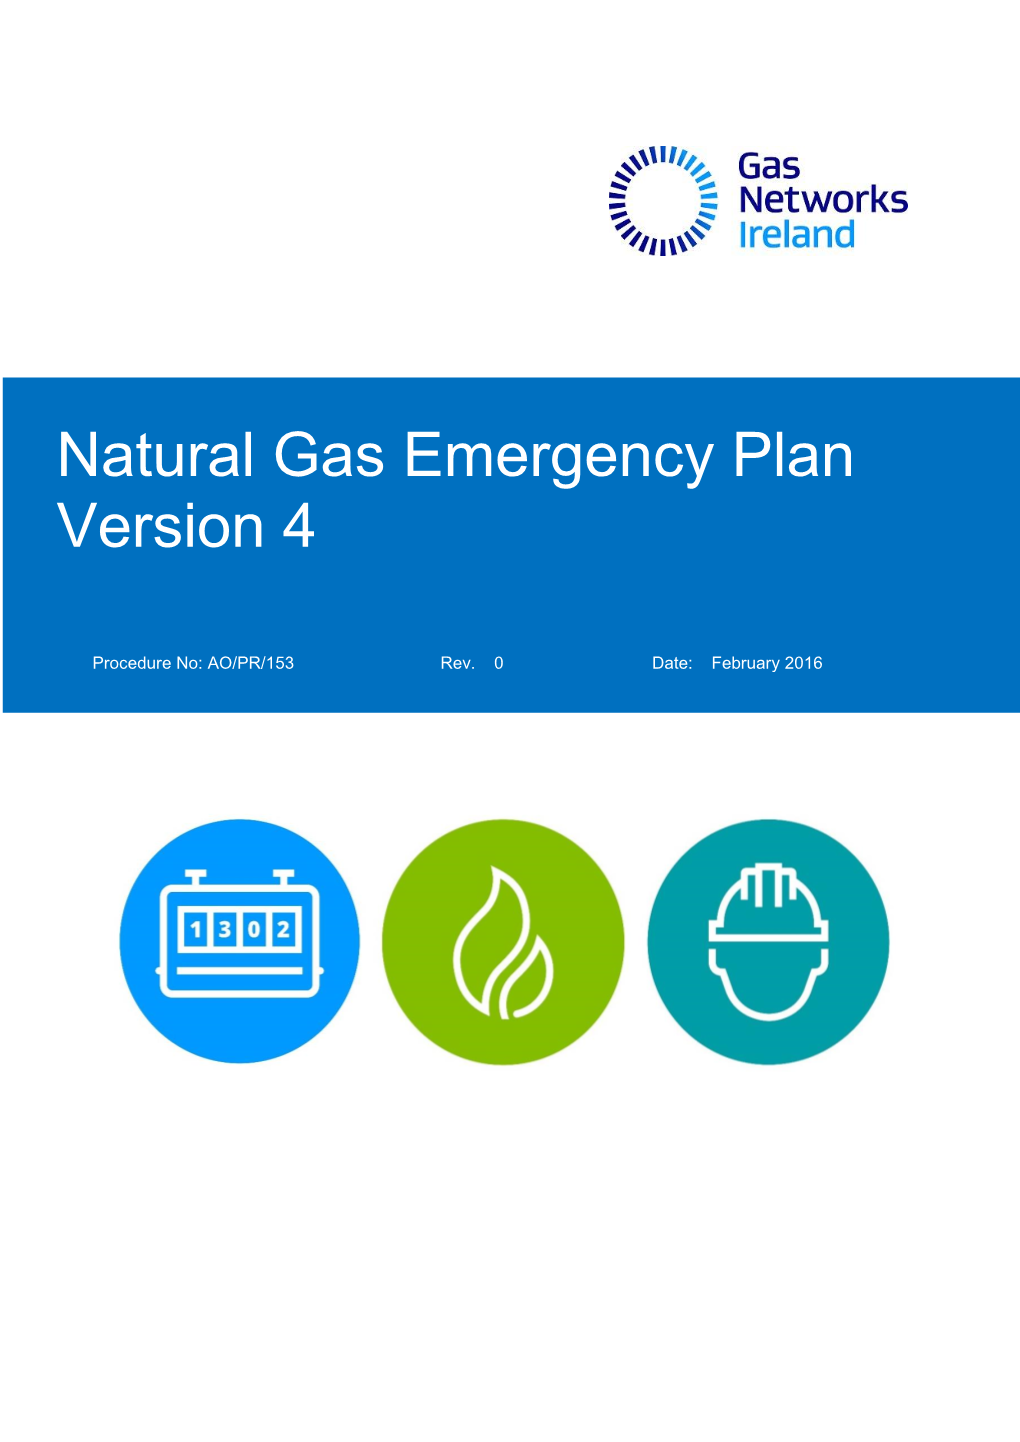 Natural Gas Emergency Plan Version 4